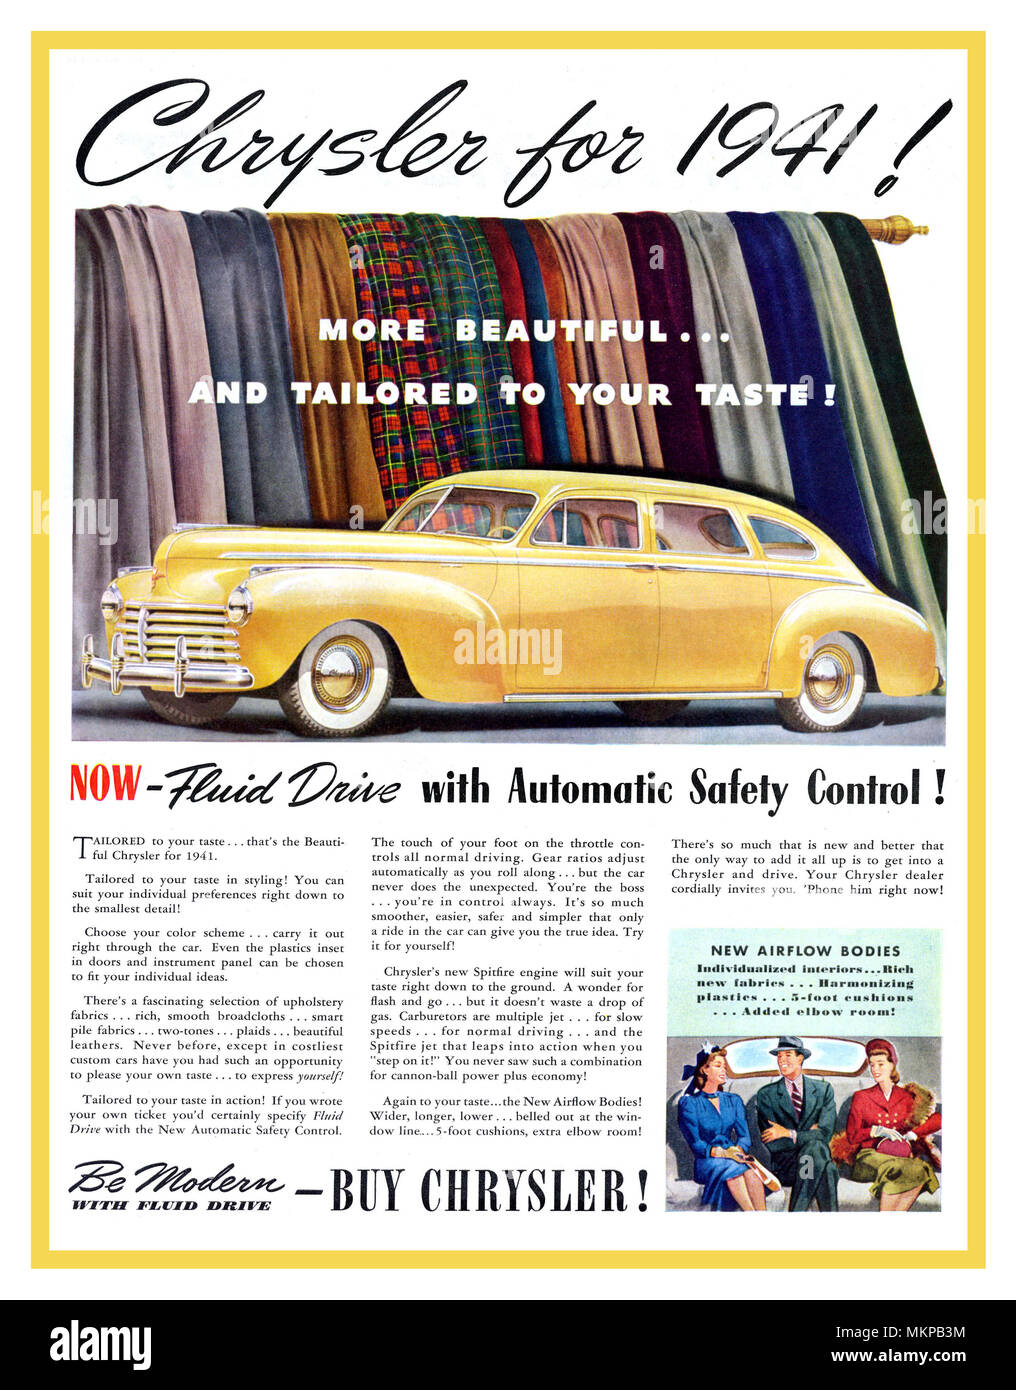 1941 Chrysler Airflow 4 américain jaune porte fluide de corps conduisent des voitures - Publicité presse original fabriqué dans l'année du début de la Seconde Guerre mondiale, l'Amérique Banque D'Images